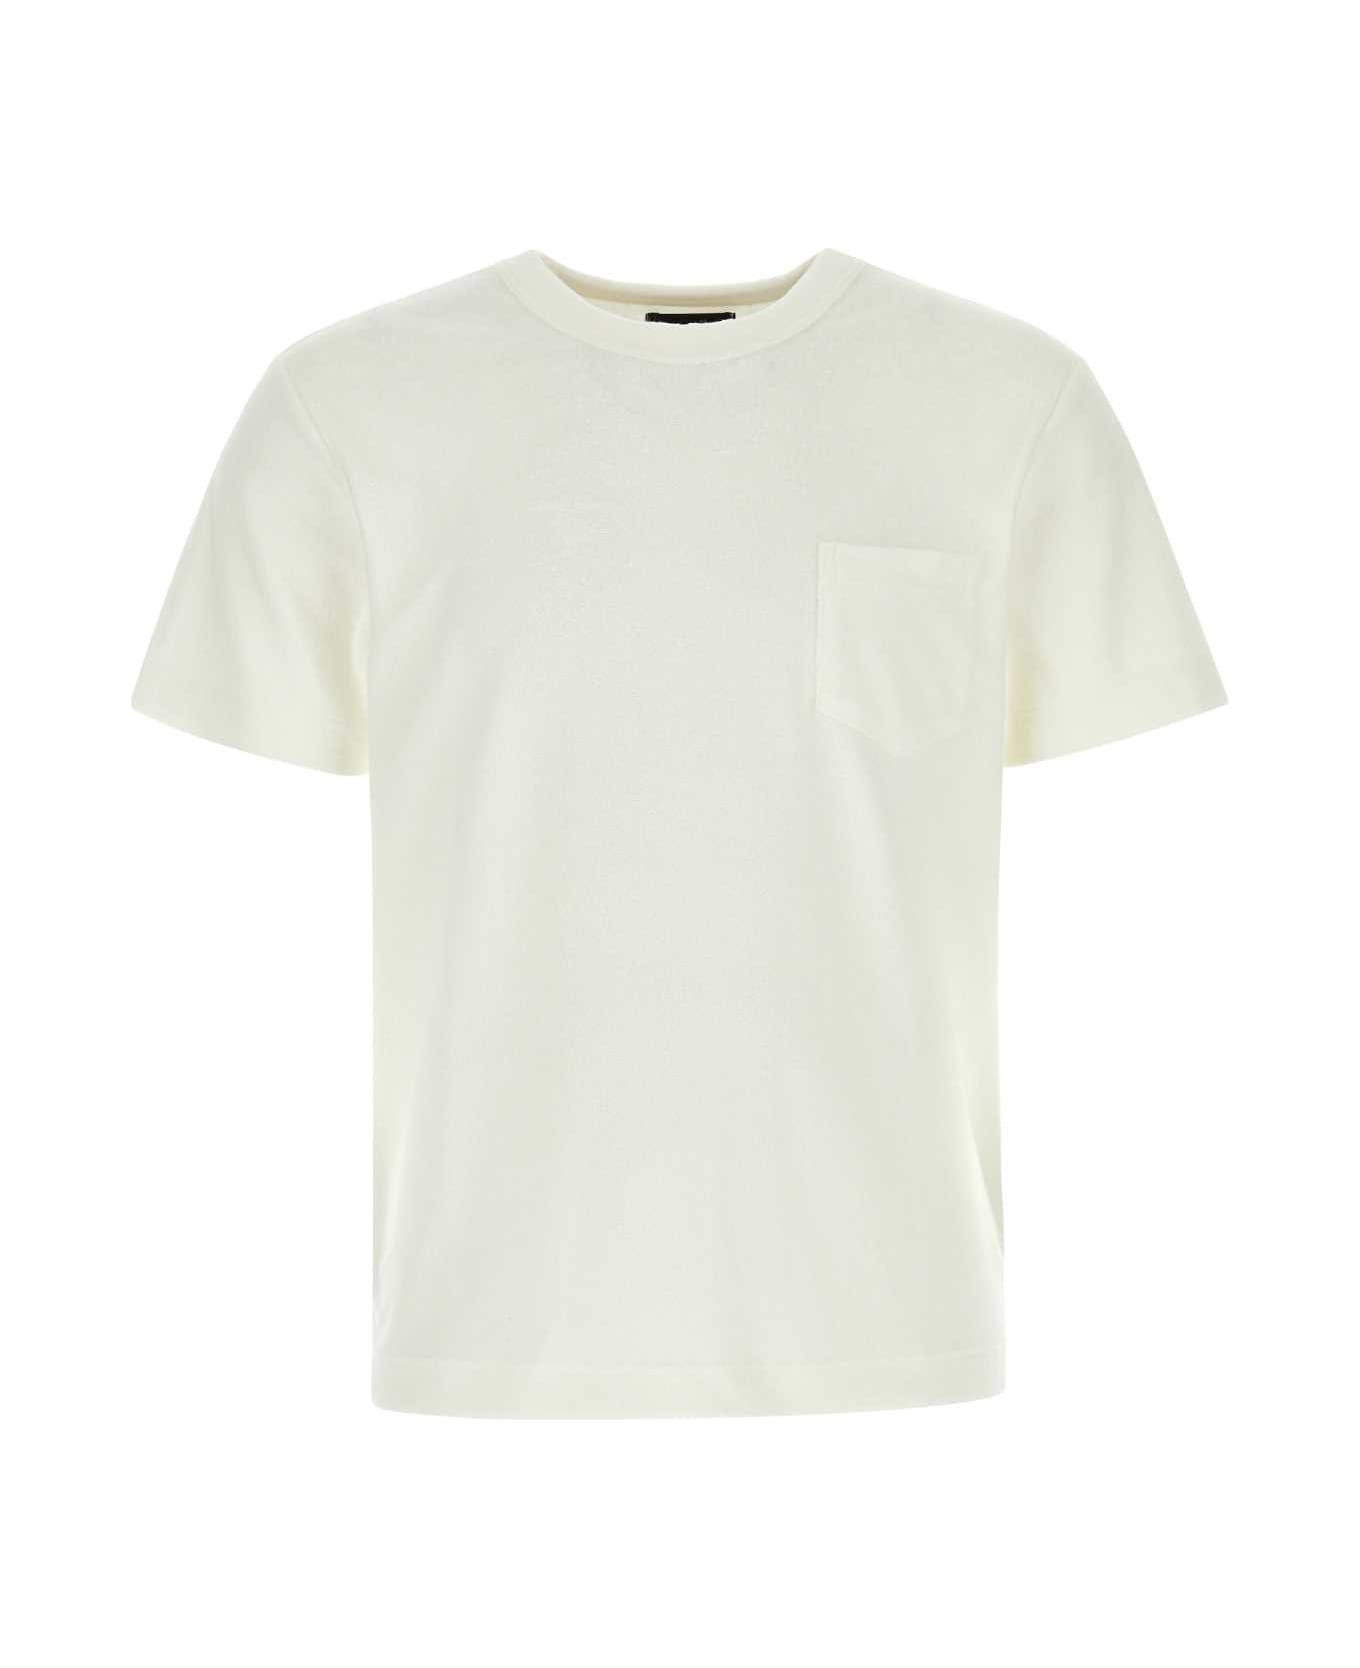 Howlin White Terry Fons T-shirt - ECRU